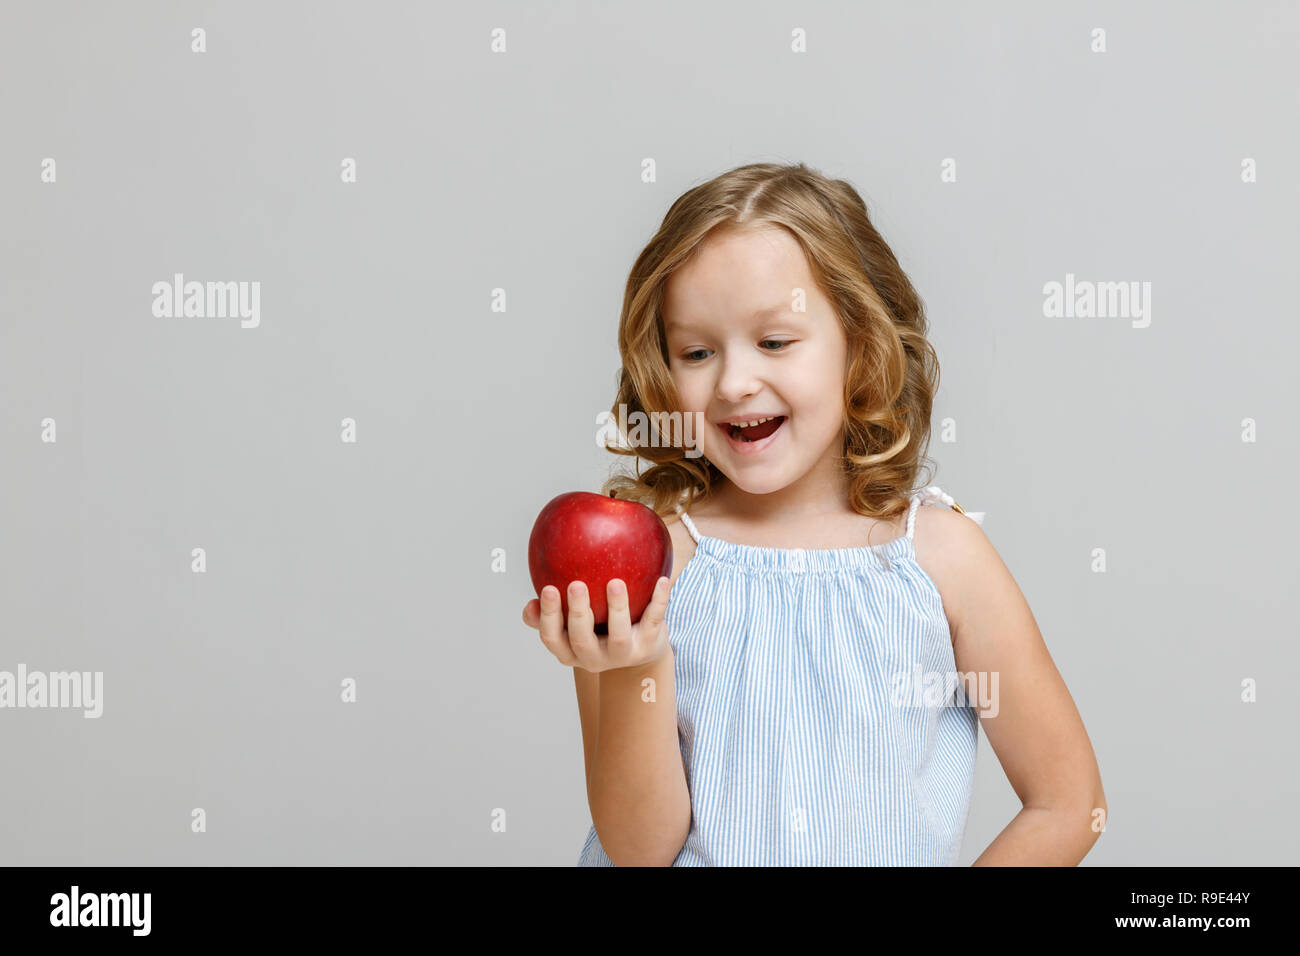 Porträt einer Glücklich lächelnde kleine blonde Mädchen auf einem grauen Hintergrund. Das Kind ist auf der Suche und bereit, roten Apfel zu essen Stockfoto